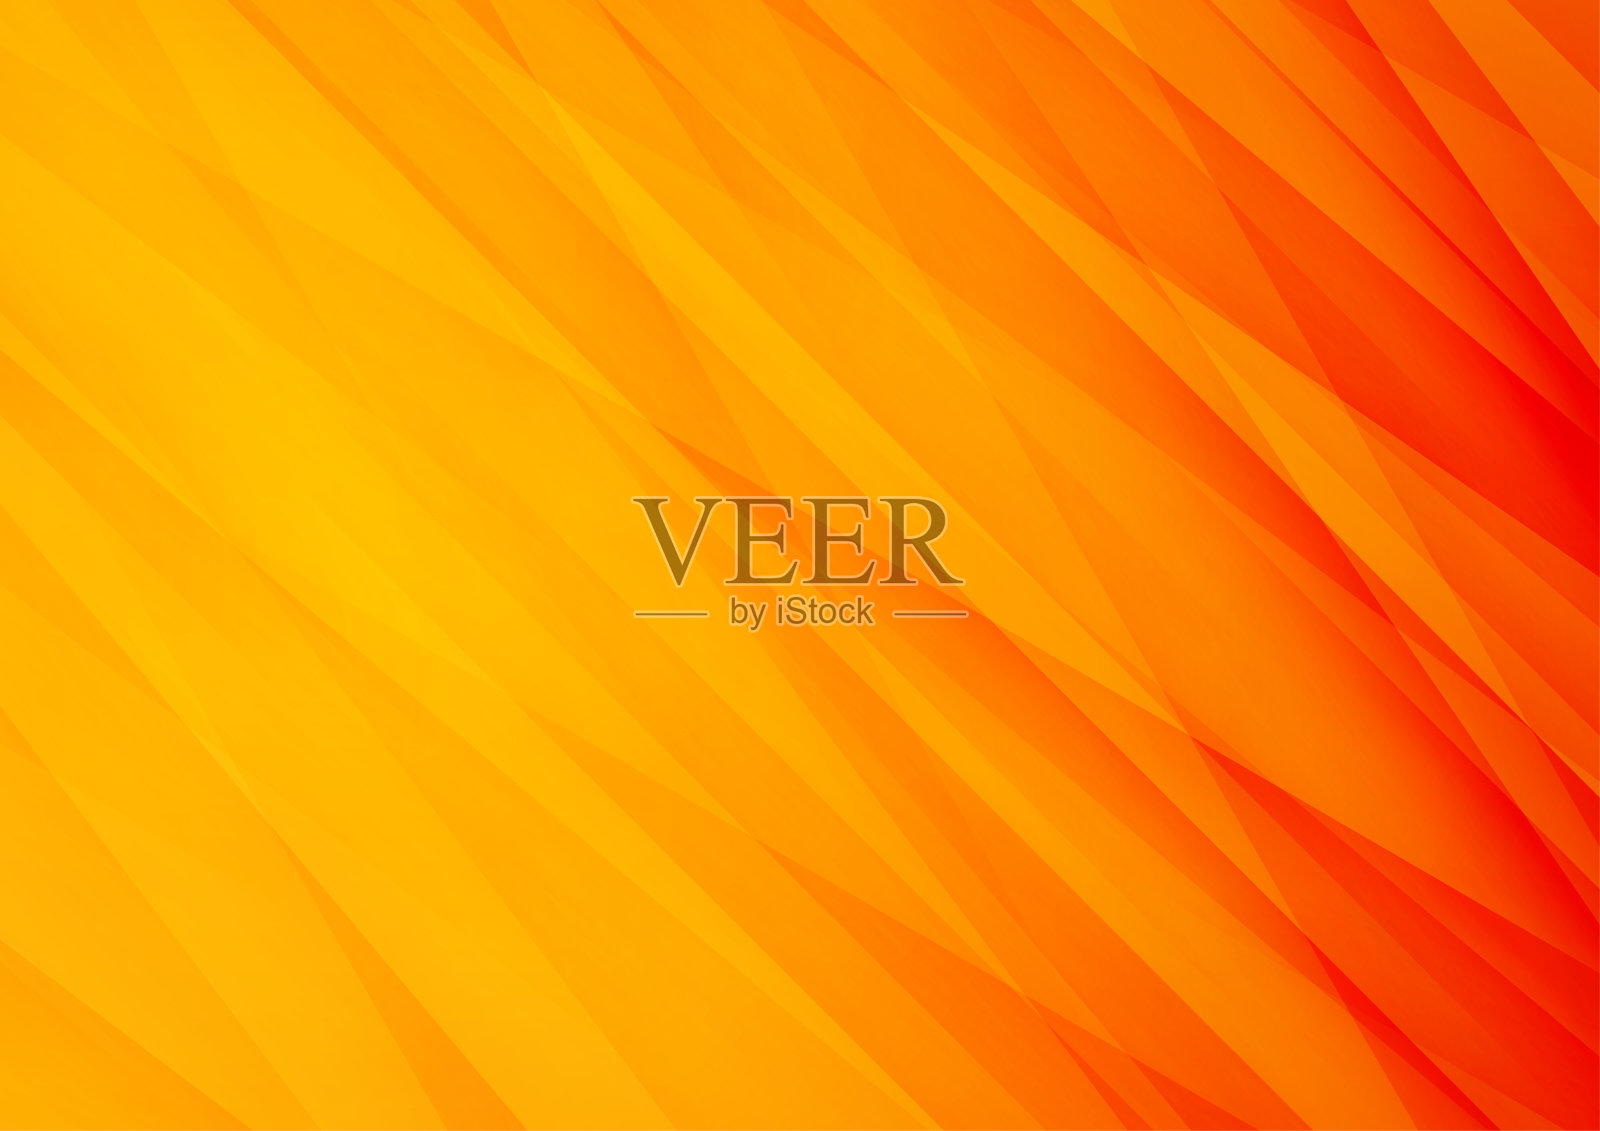 橙色矢量背景带条纹，可用于封面设计、海报、广告插画图片素材